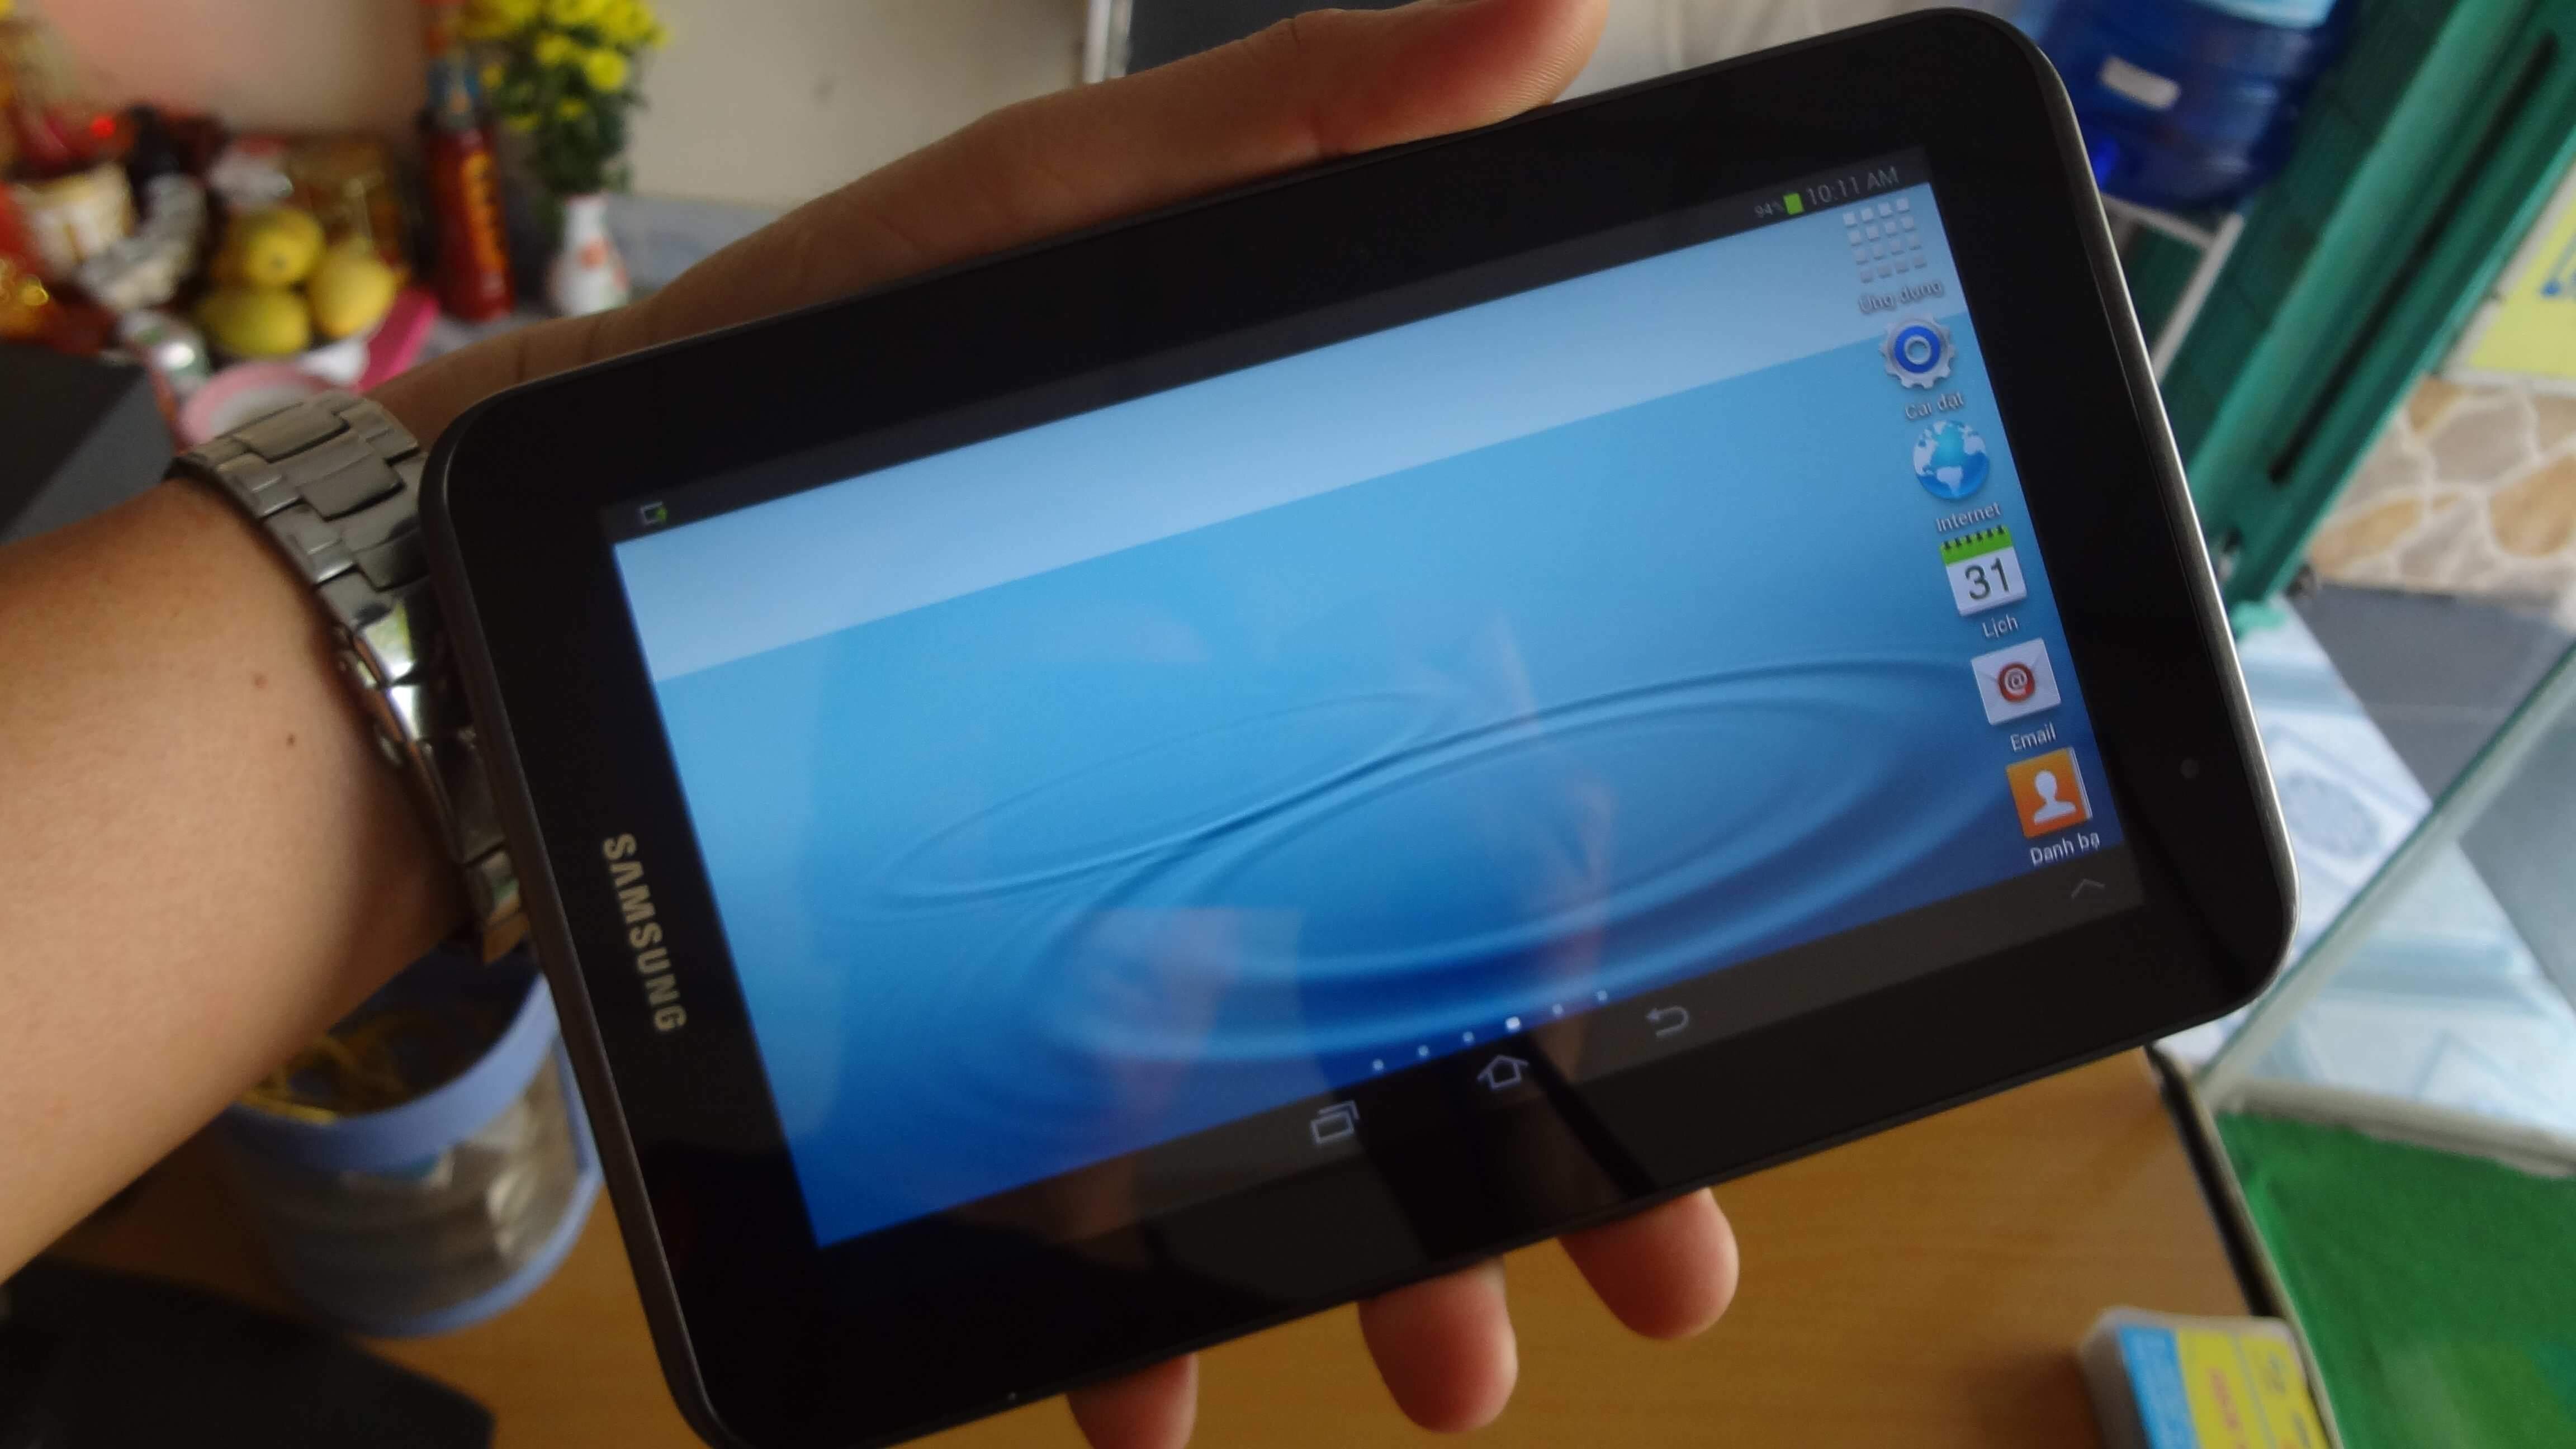 Samsung Galaxy Tab 2 7.0 cũ